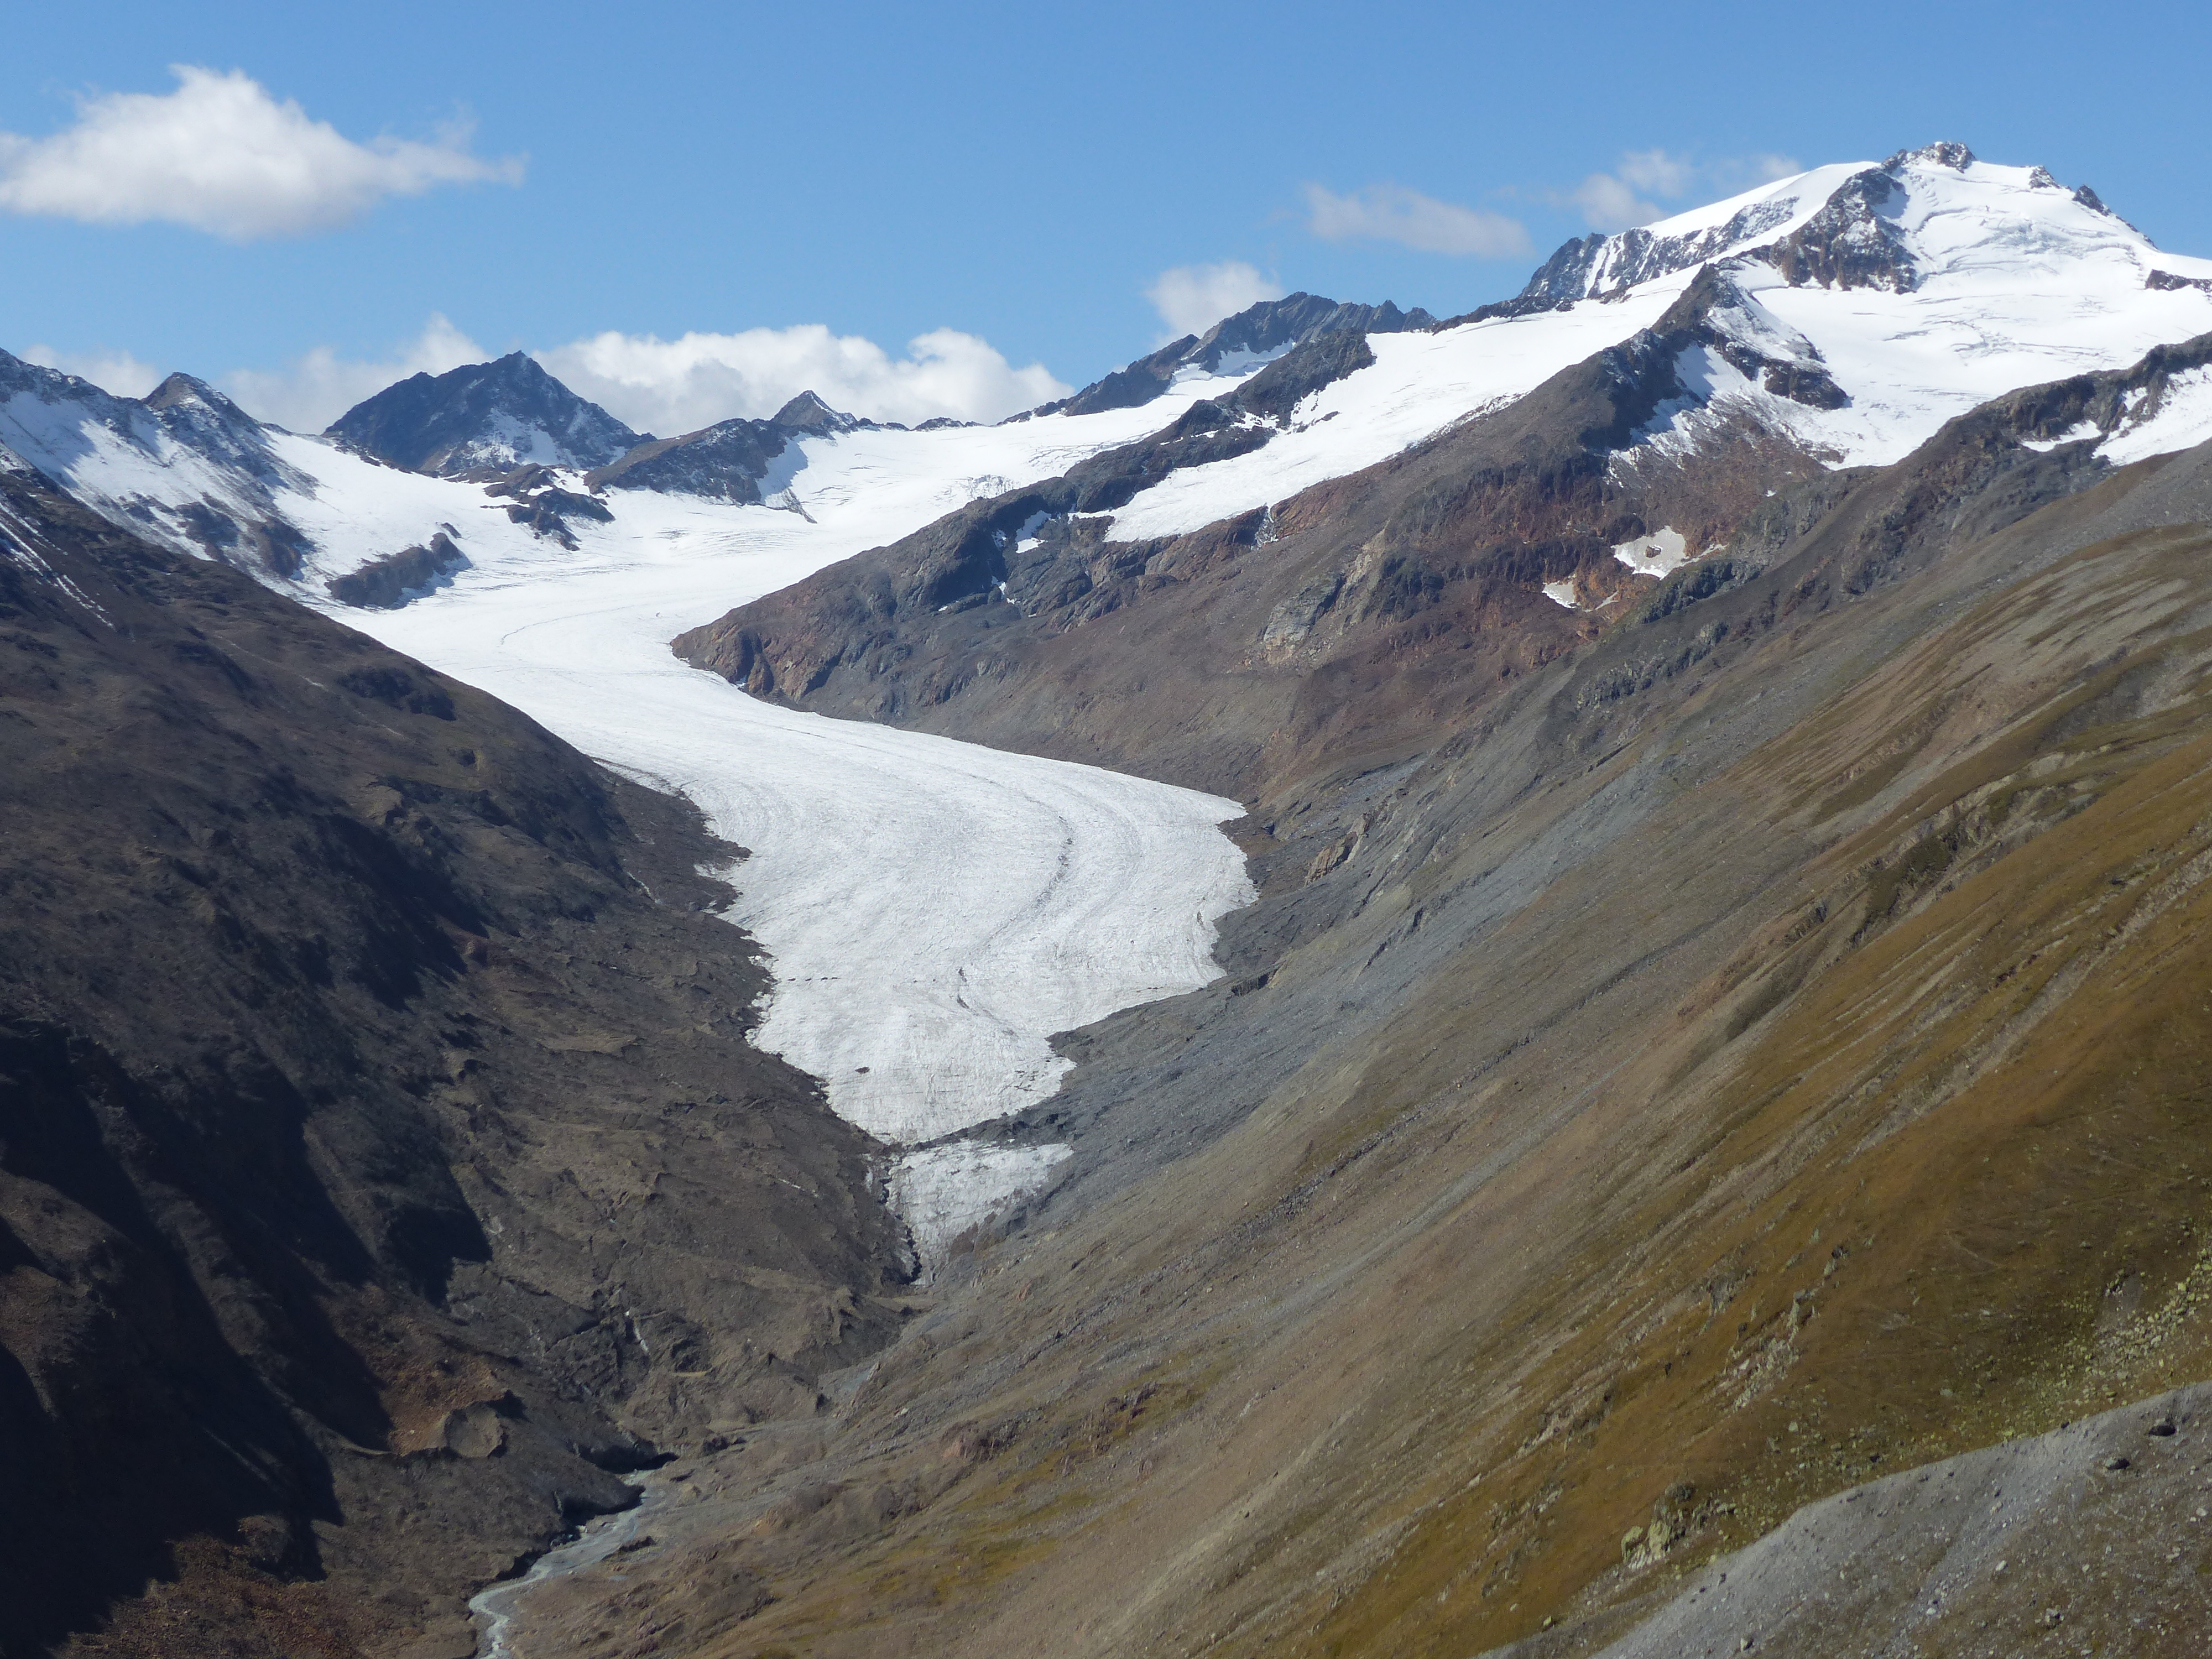 Il ghiacciaio Hintereisferner, in Austria, uno dei ghiacciai osservati nello studio